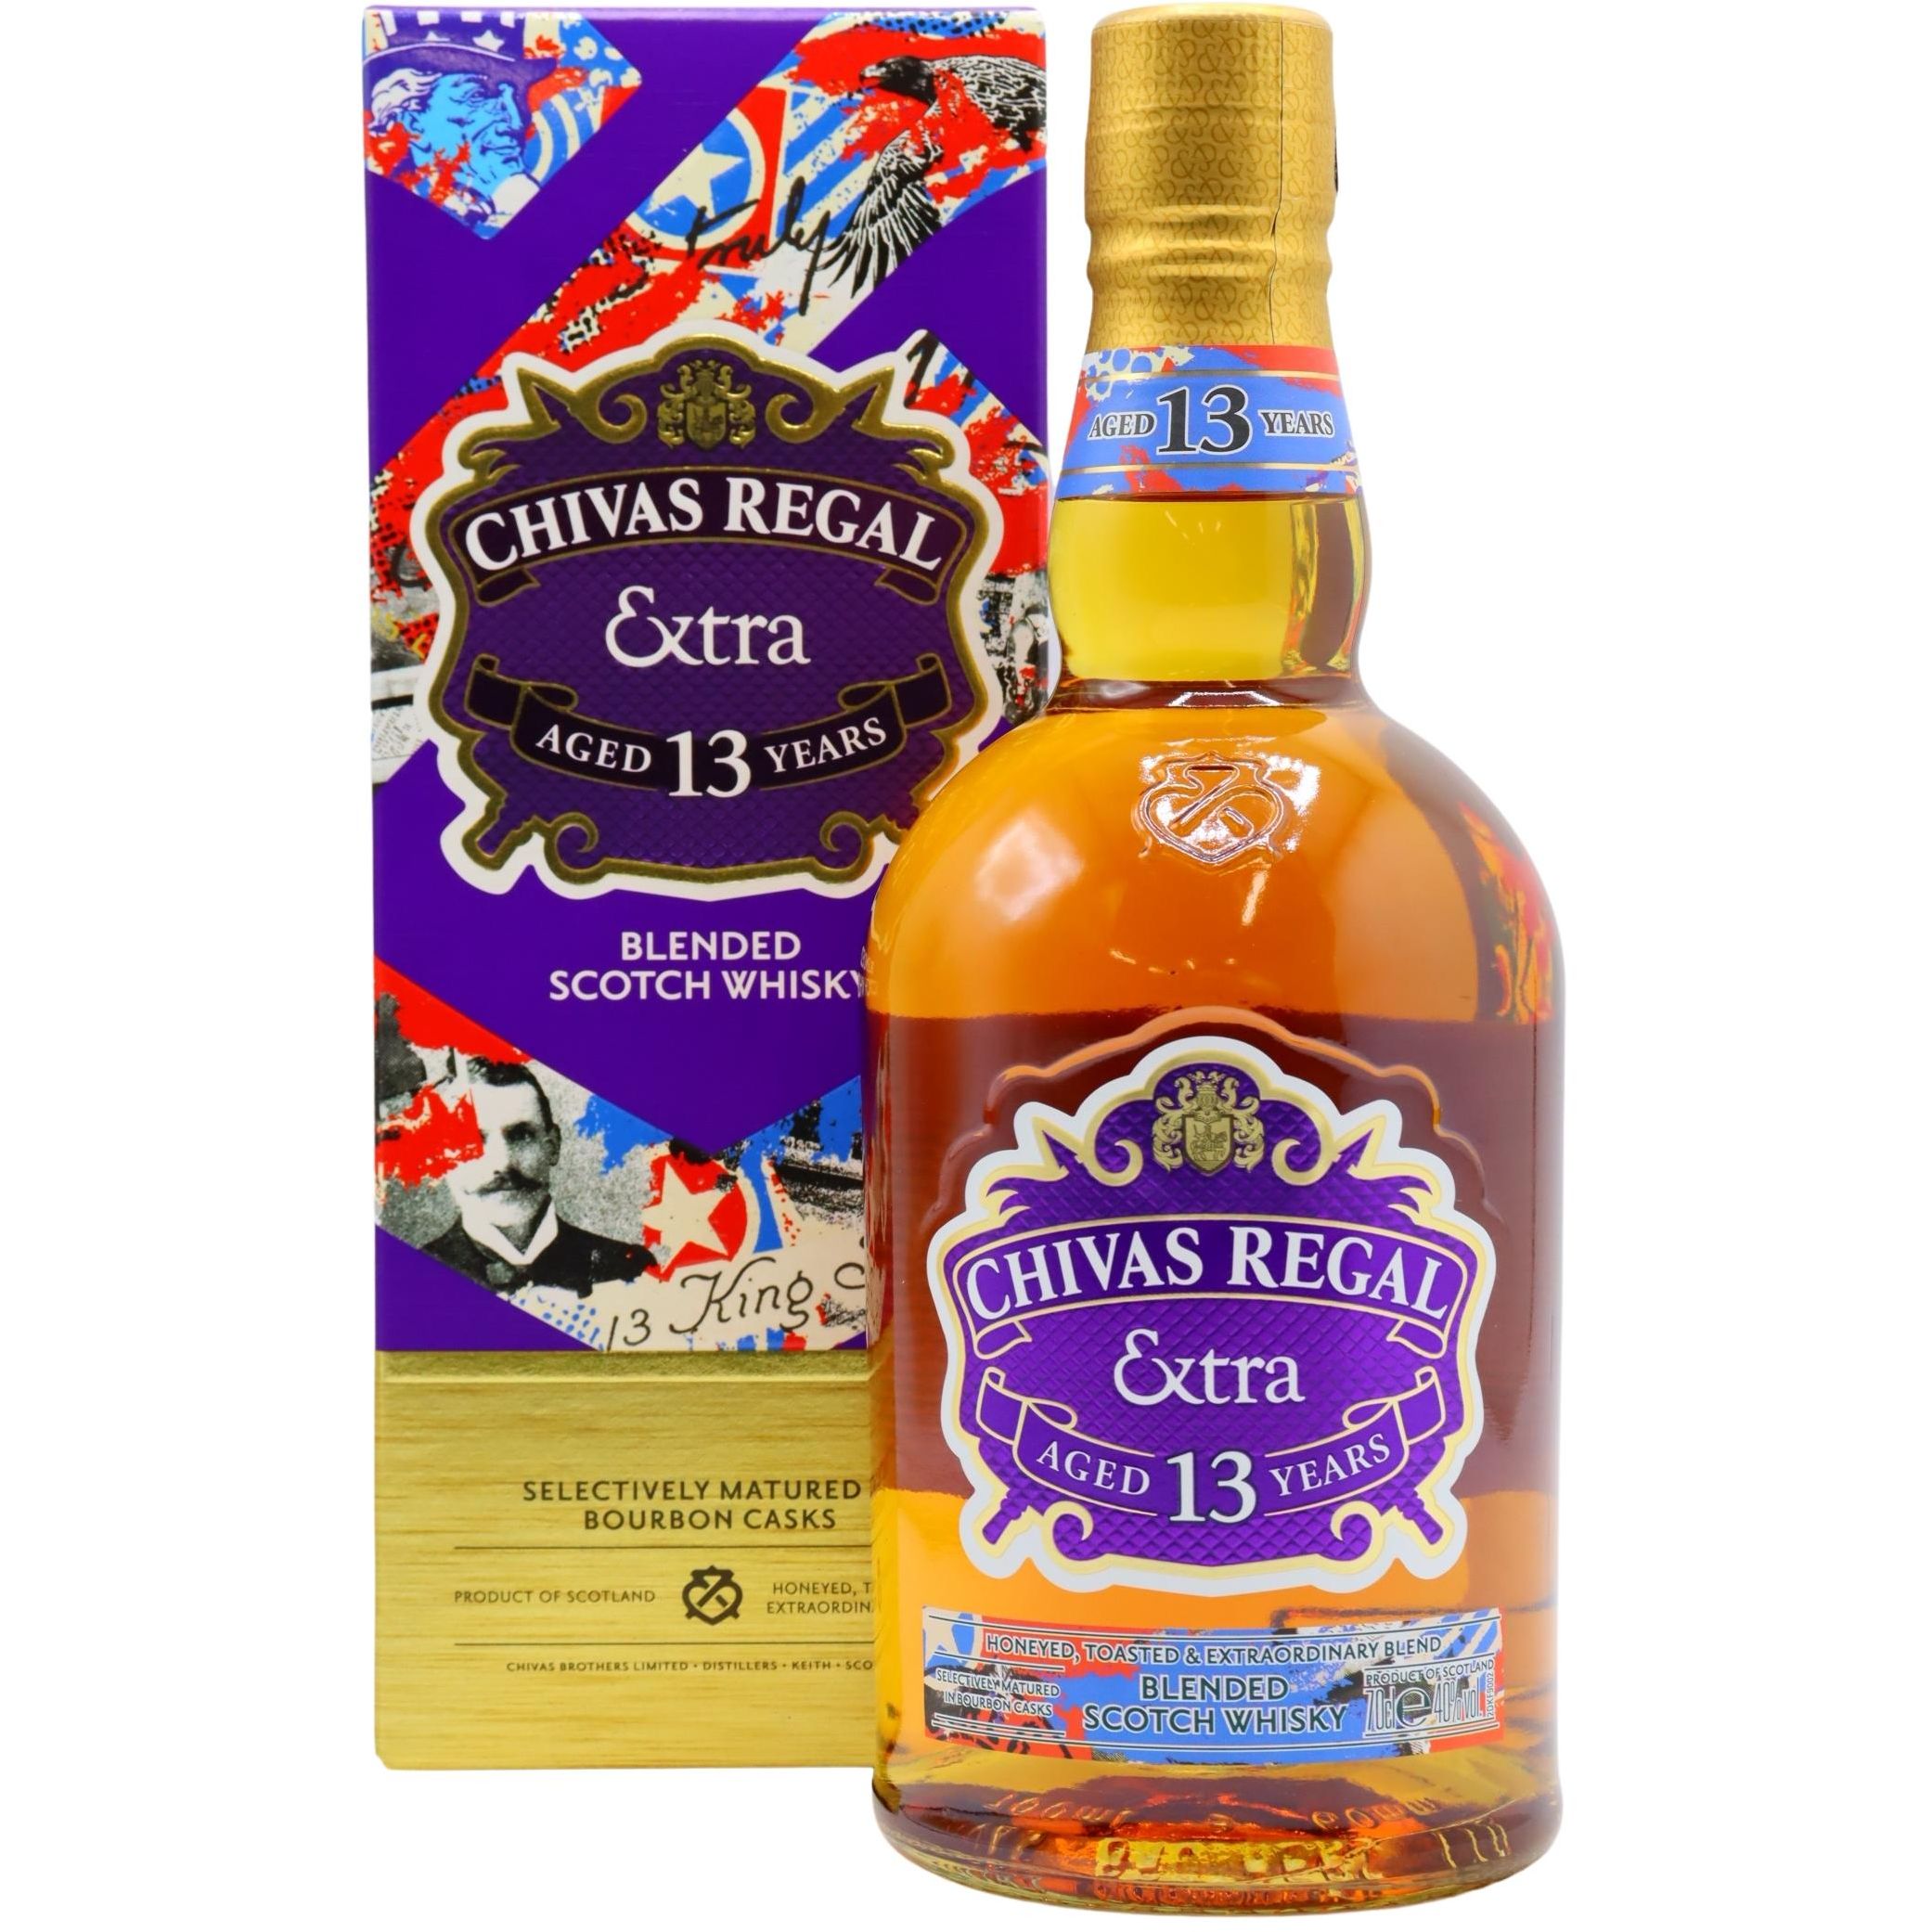 Виски Chivas Regal Extra Bourbon Cask Select 13 yo Blended Scotch Whisky 40% 0.7 л, в подарочной упаковке - фото 1